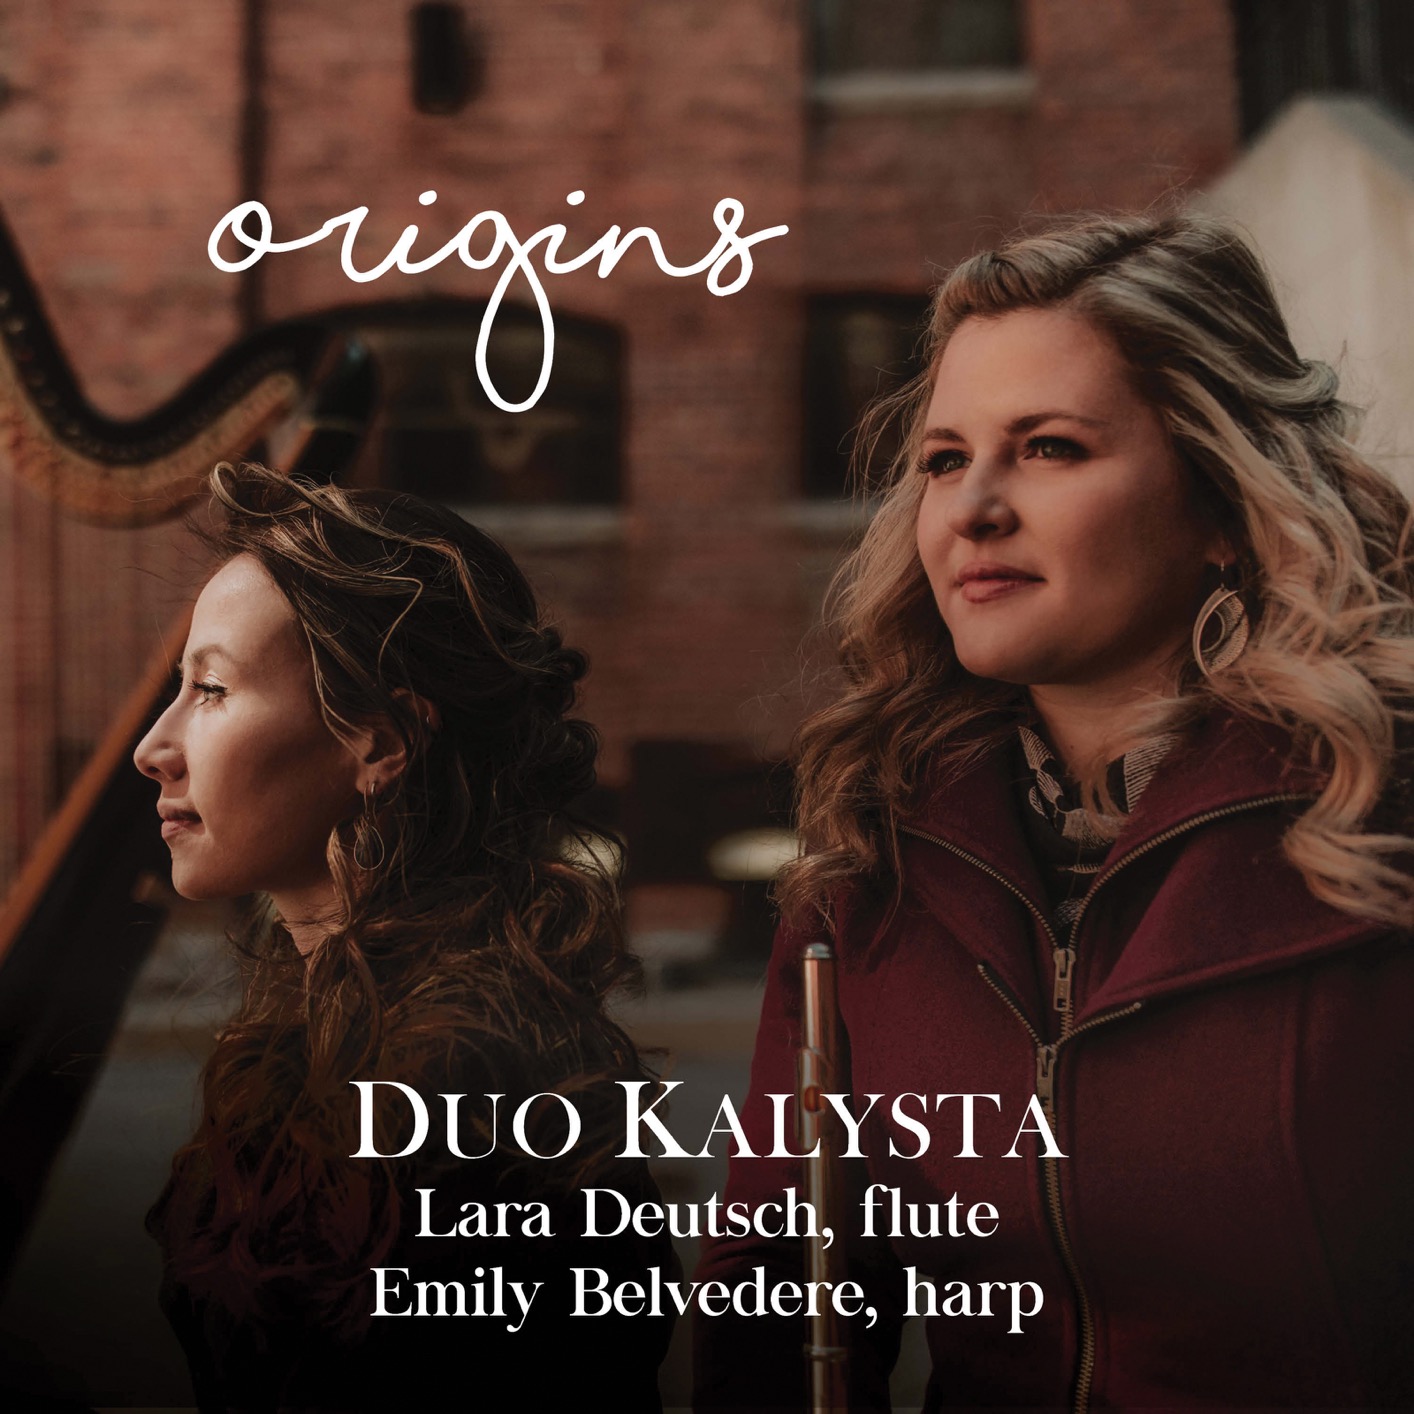 Duo Kalysta – Origins (2019) [FLAC 24bit/96kHz]